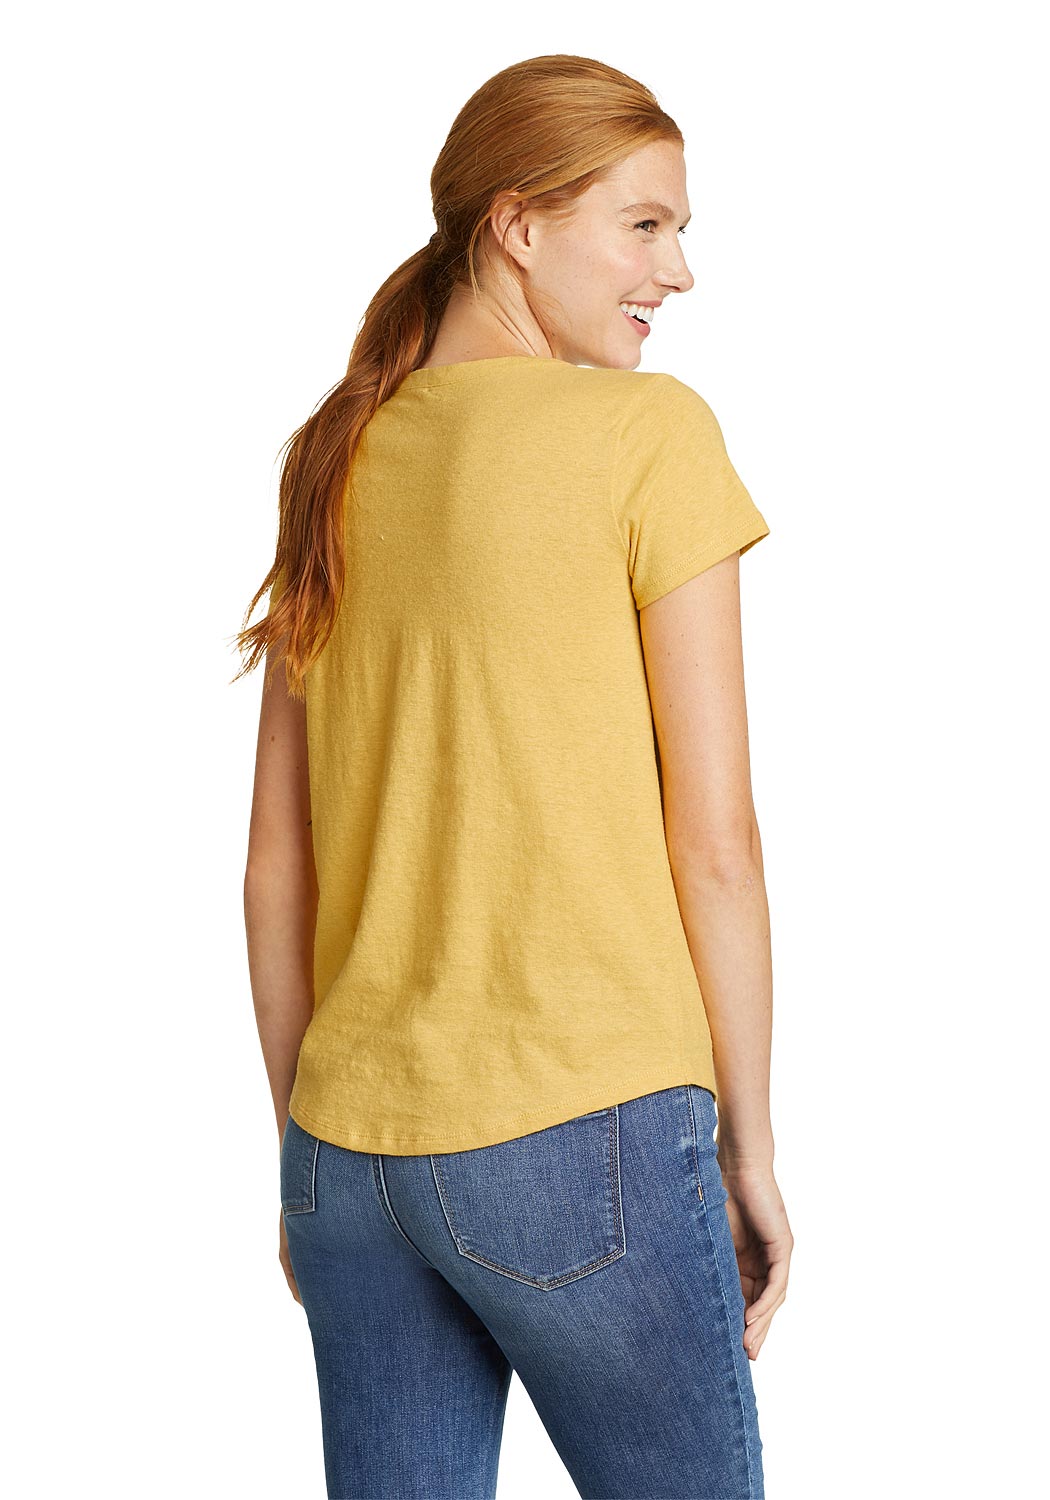 Artikel klicken und genauer betrachten! - Hemplify Henleyshirt Damen Orange Gr. S Verleihe mit diesem umweltfreundlichen Henleyshirt deiner Alltagsgarderobe eine einzigartige Mischung aus Komfort und Stil. Wir haben nachhaltig gewonnene Baumwolle und Hanf verwendet, um zusätzliche Atmungsaktivität zu gewährleisten, und das Shirt mit natürlichen Pigmenten gefärbt, um einen einzigartigen Look zu kreieren. | im Online Shop kaufen